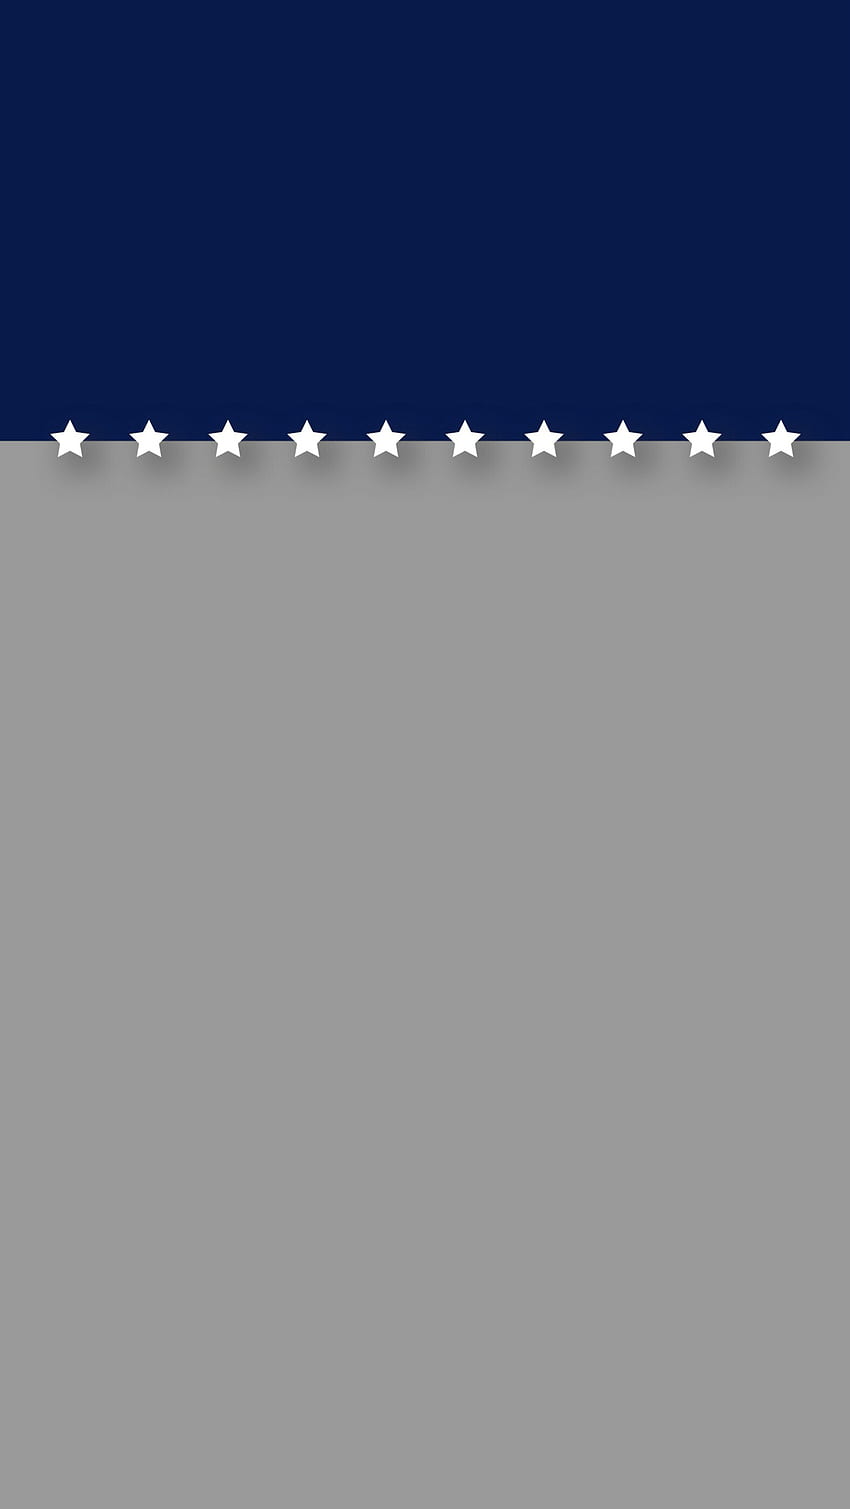 Minimal blu e grigio con stelle patriottico iPhone 6 Plus schermata di blocco. Sfondo del telefono HD